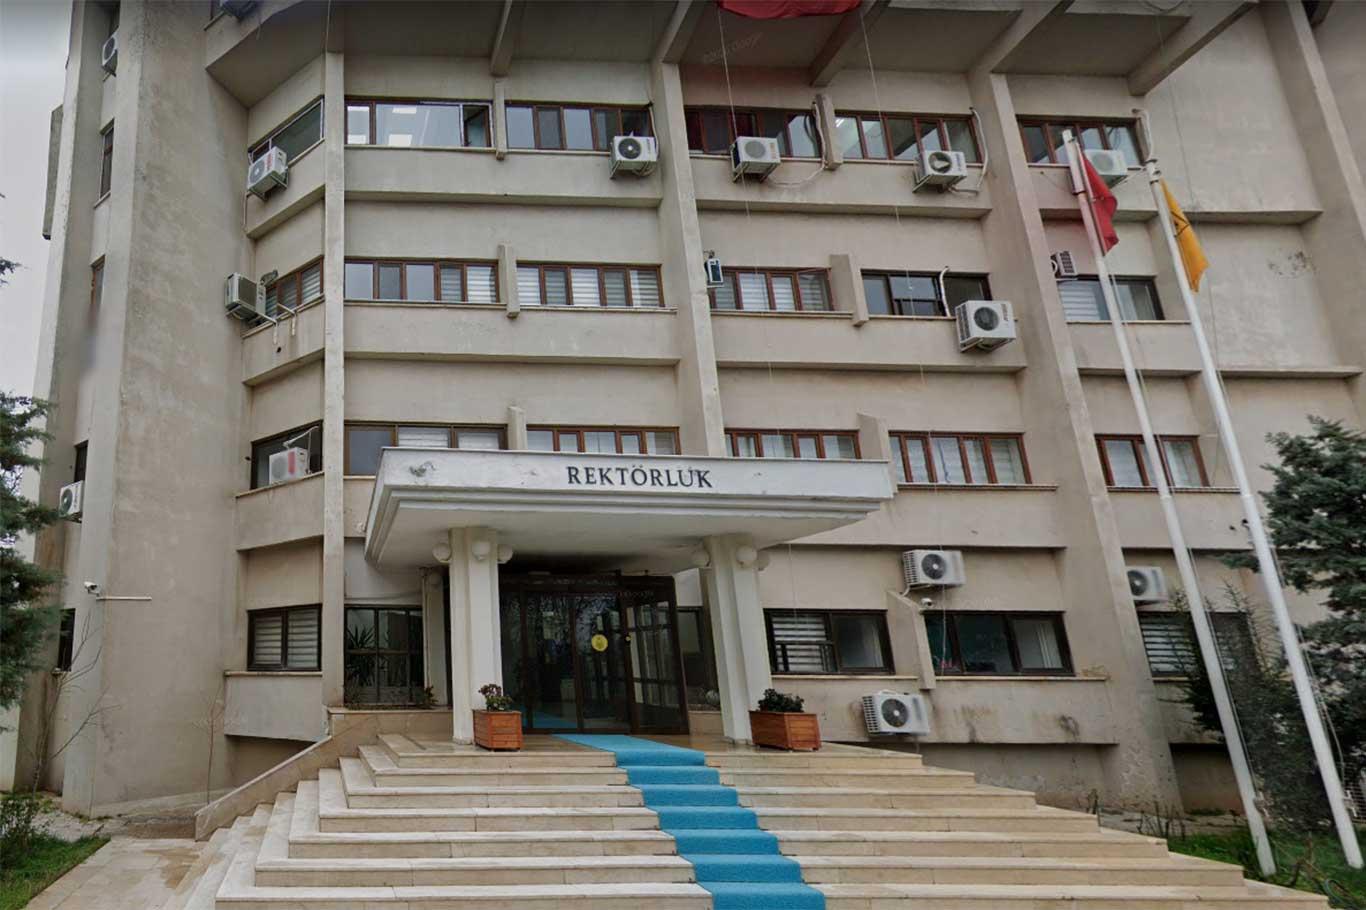 Dicle Üniversitesi'nden "Kürtçe tez yazımının yasaklandığı" iddialarına açıklama